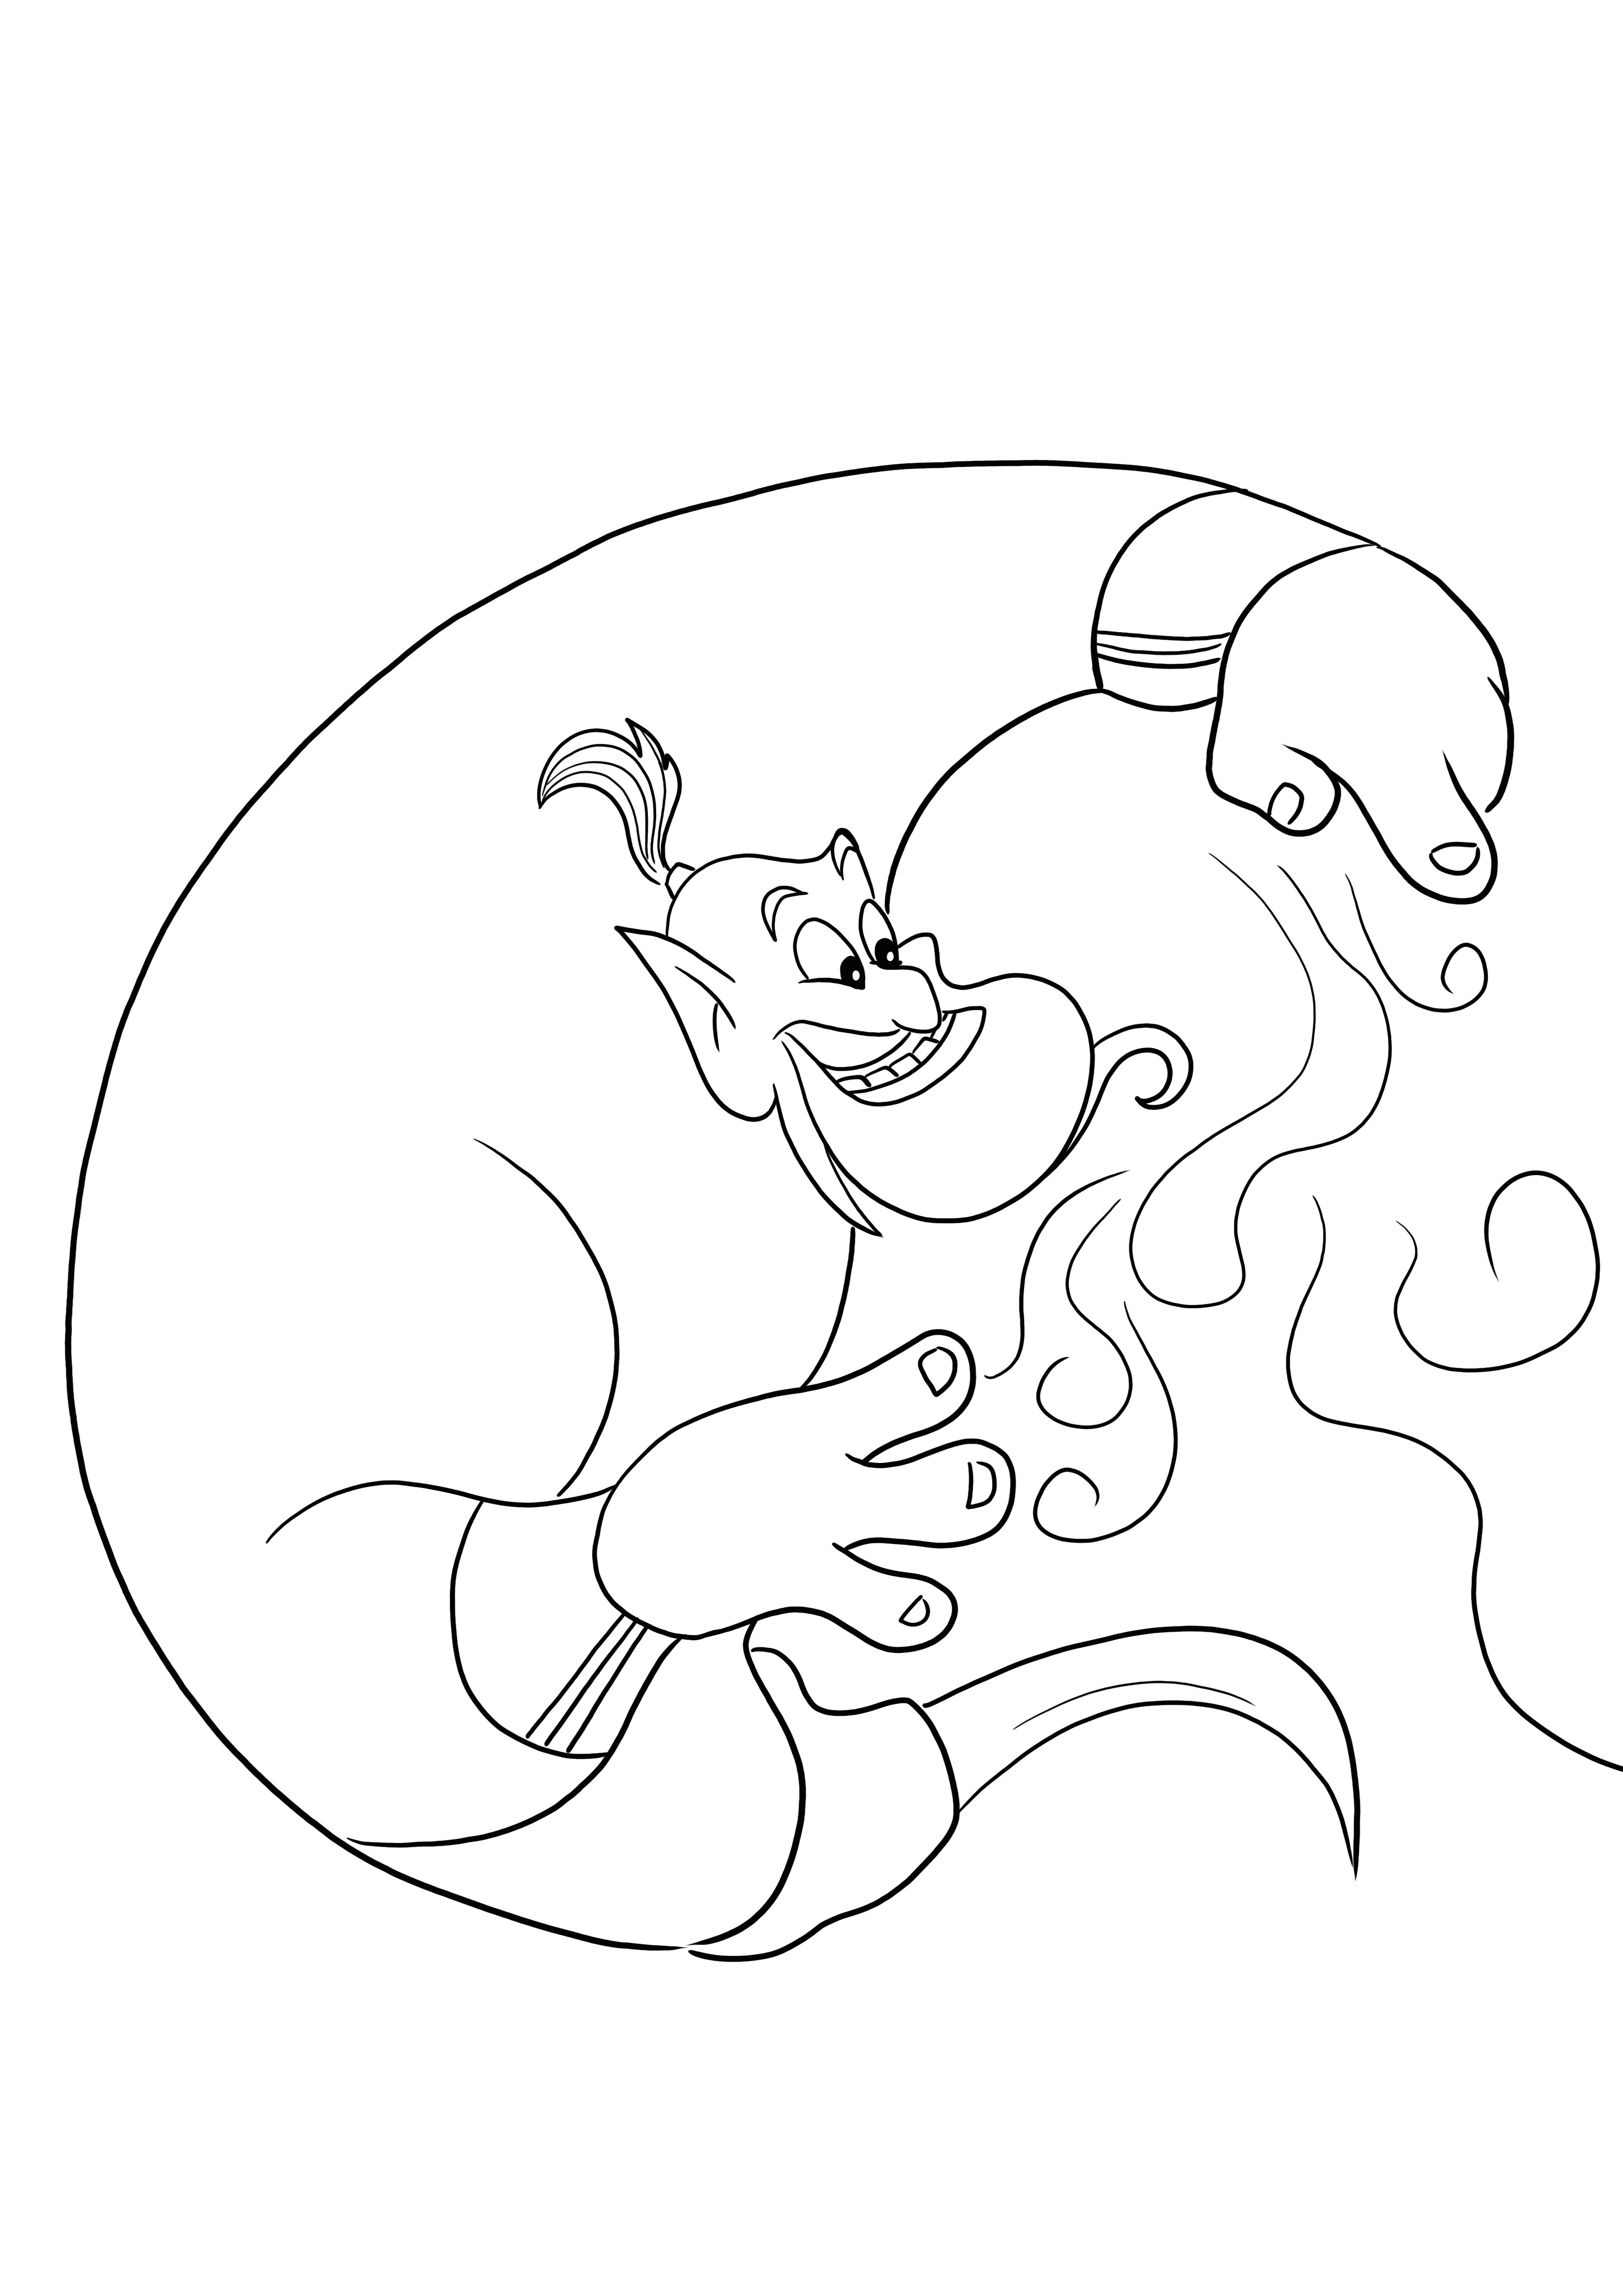 Imagem para imprimir e colorir gratuita de Jennie do filme Aladdin